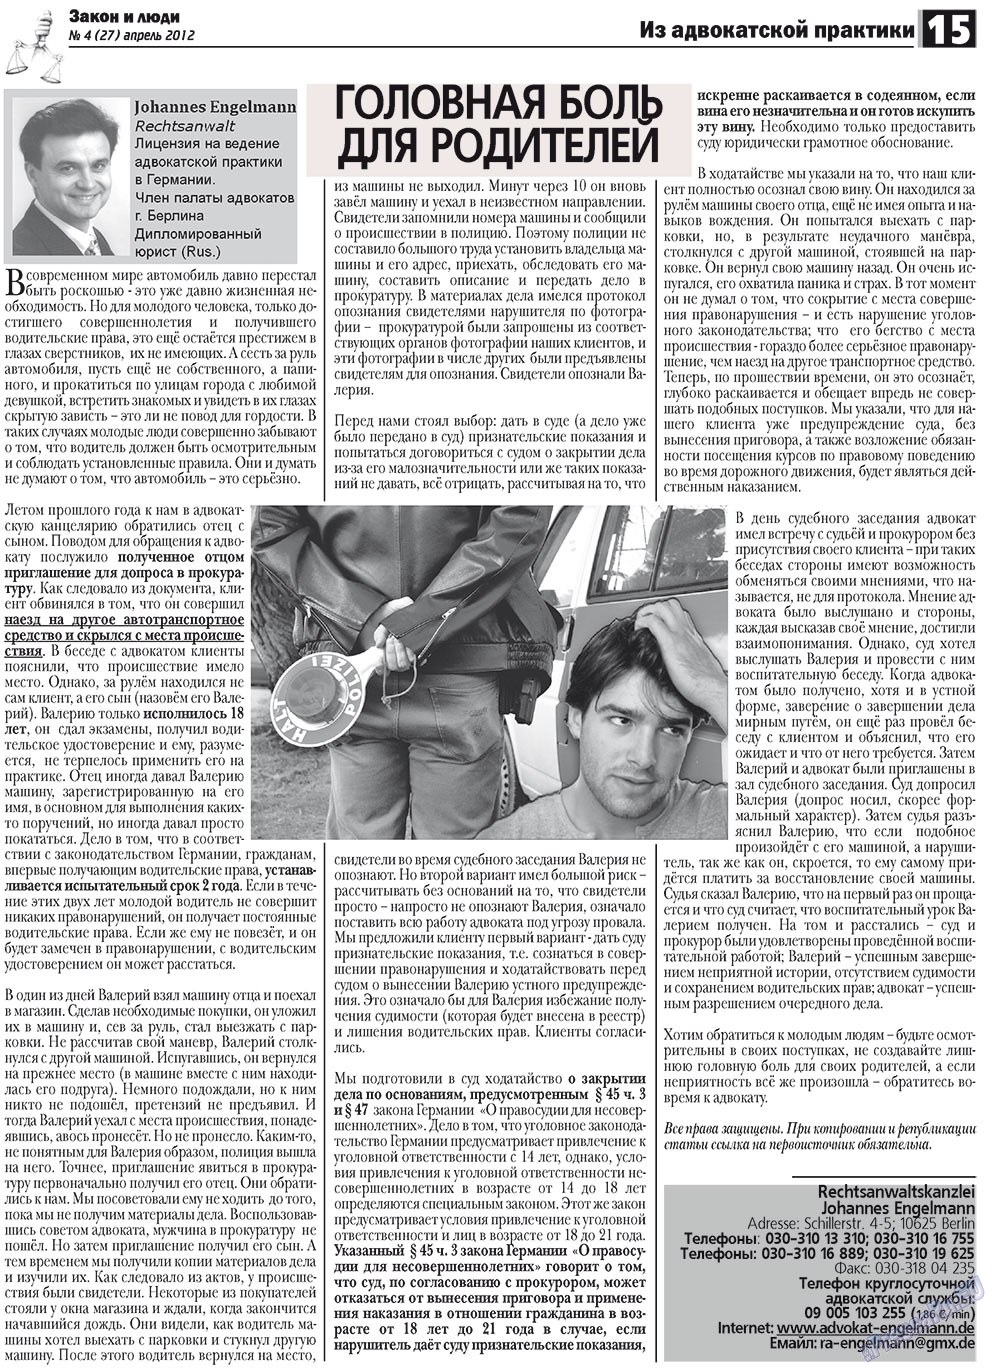 Закон и люди, газета. 2012 №4 стр.15